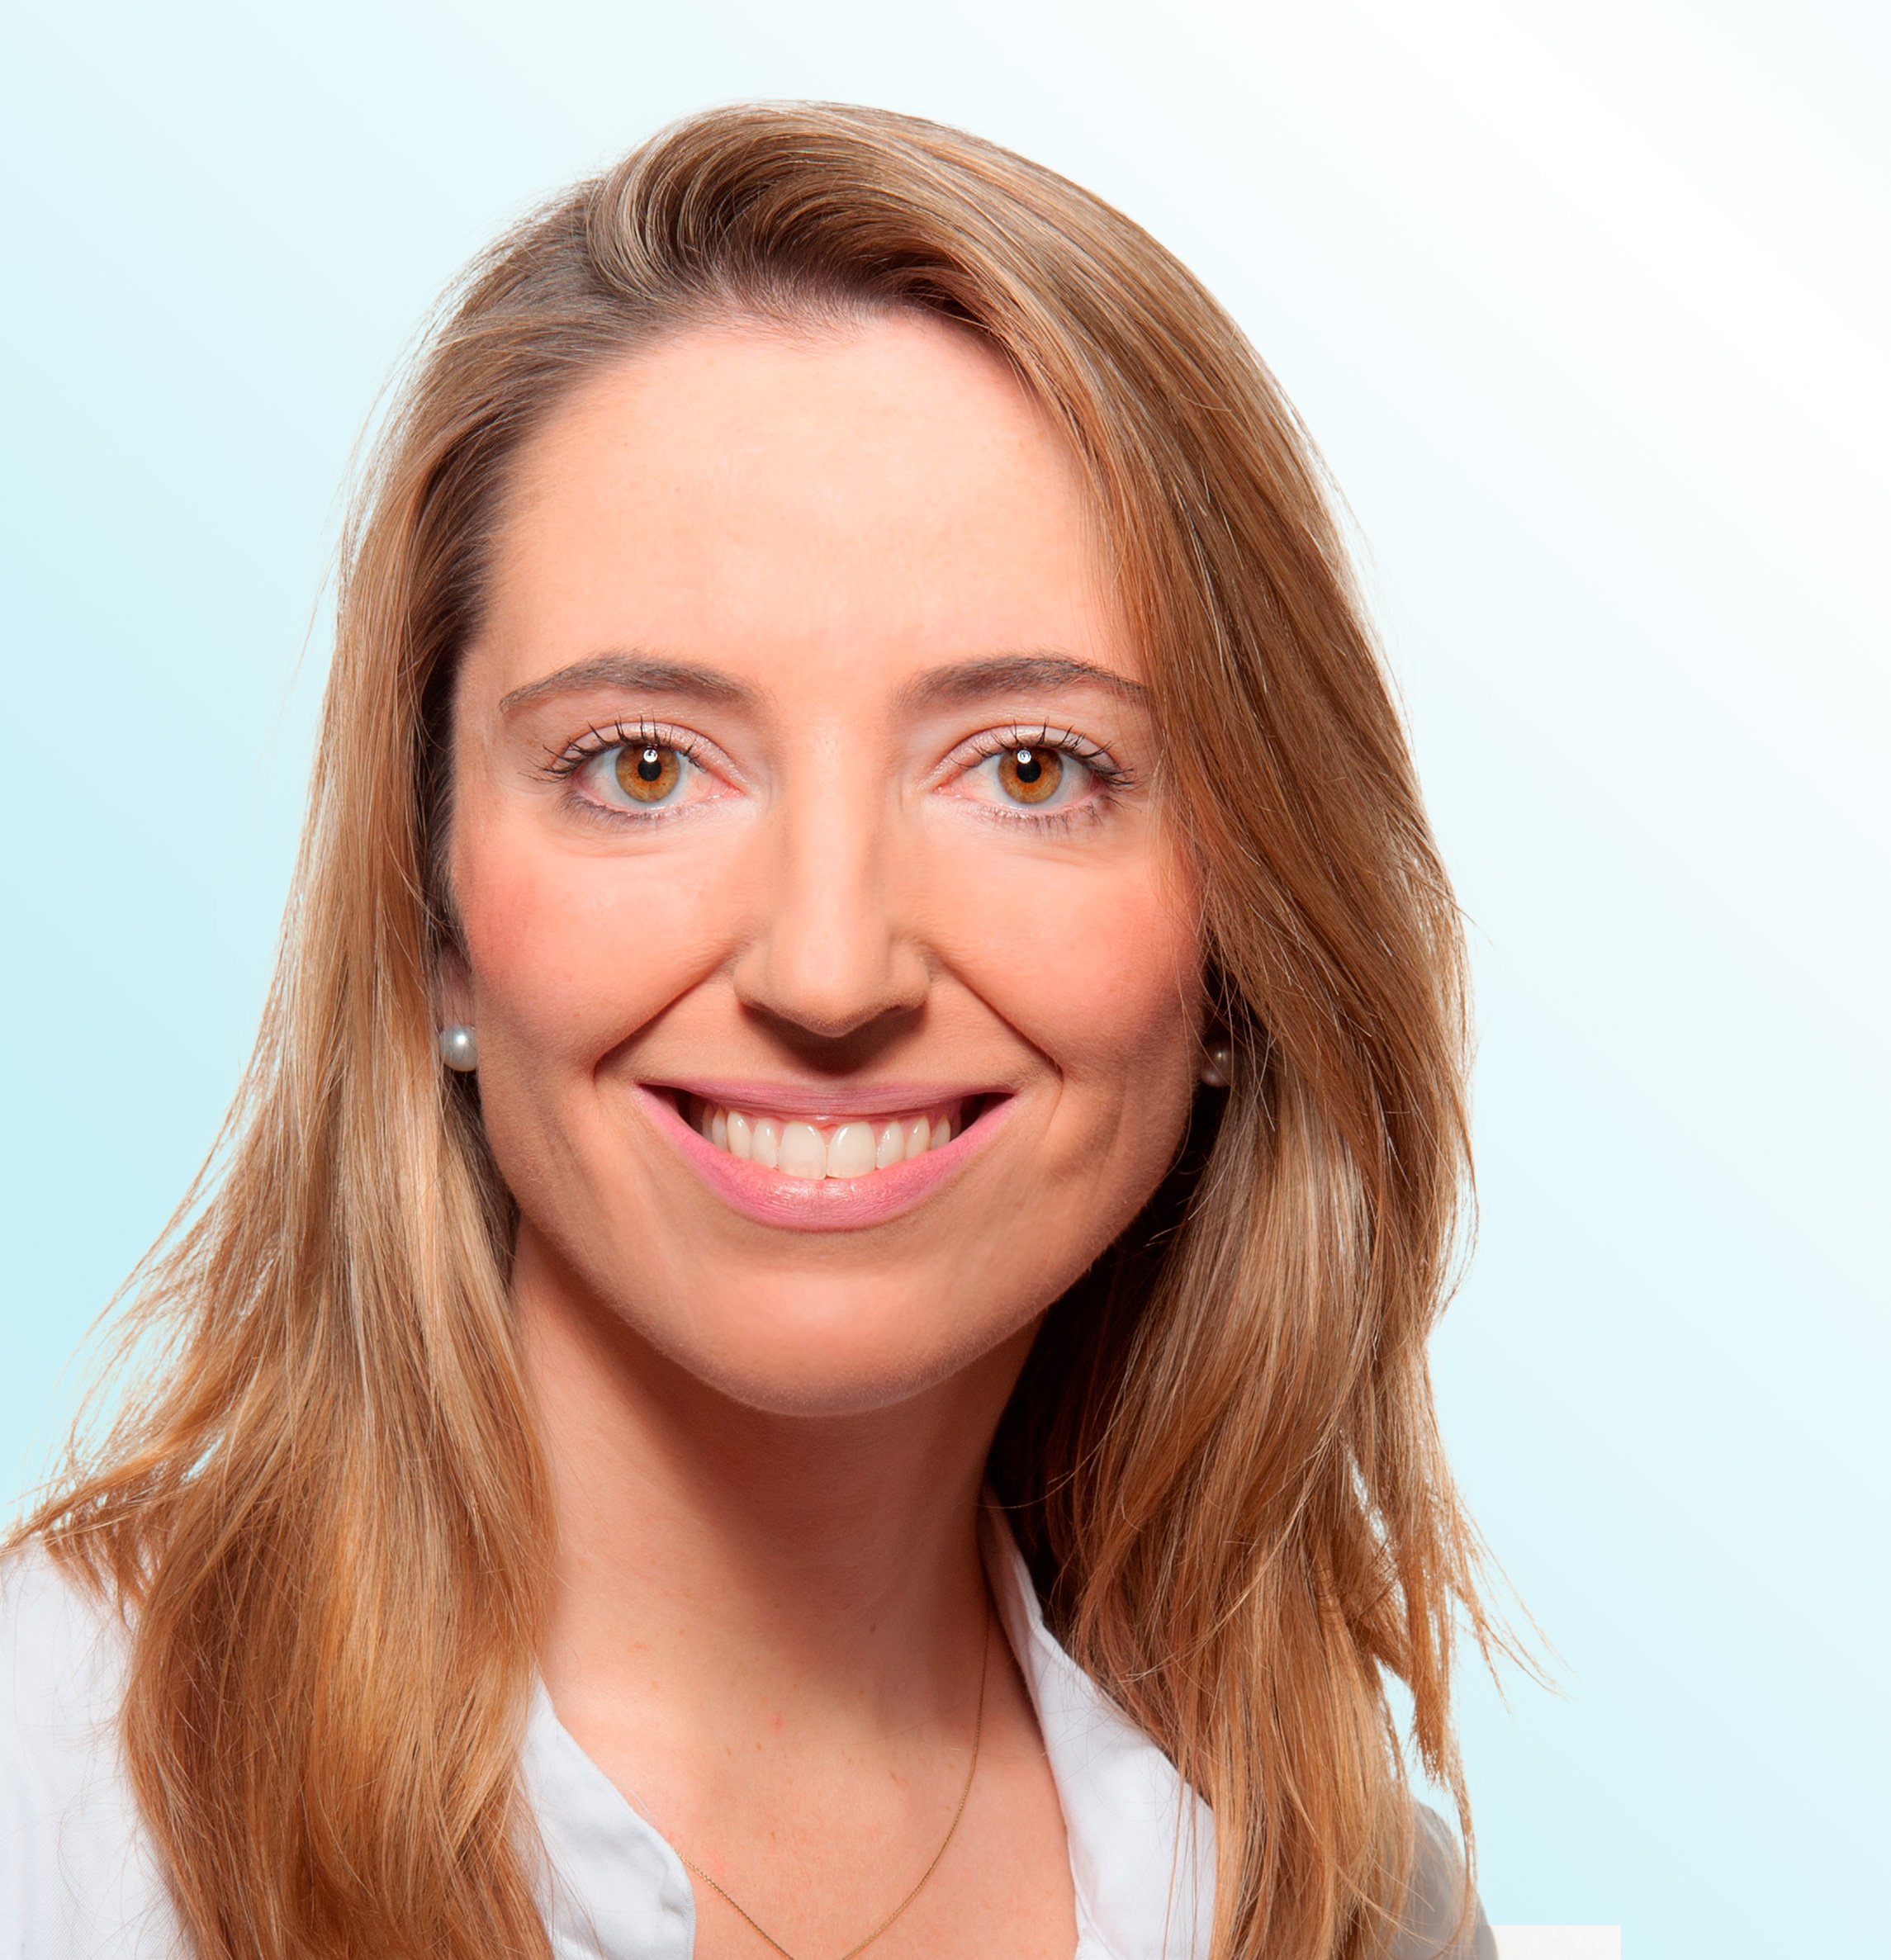 Dermatologo, Dr. med.  Lara Valeska Maul